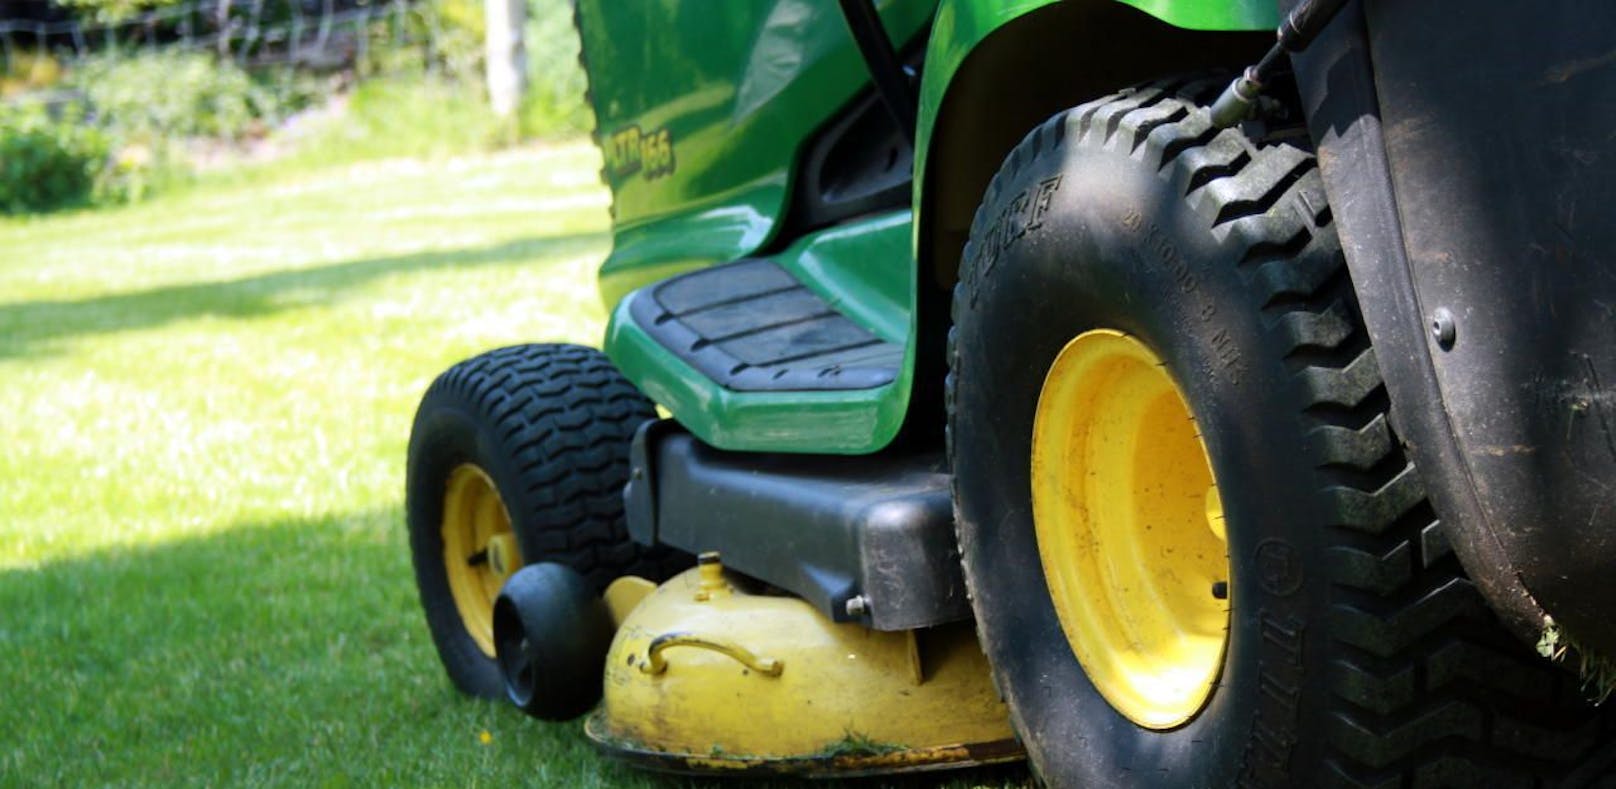 Dem Fußballverein wurde der Rasenmäher-Traktor gestohlen